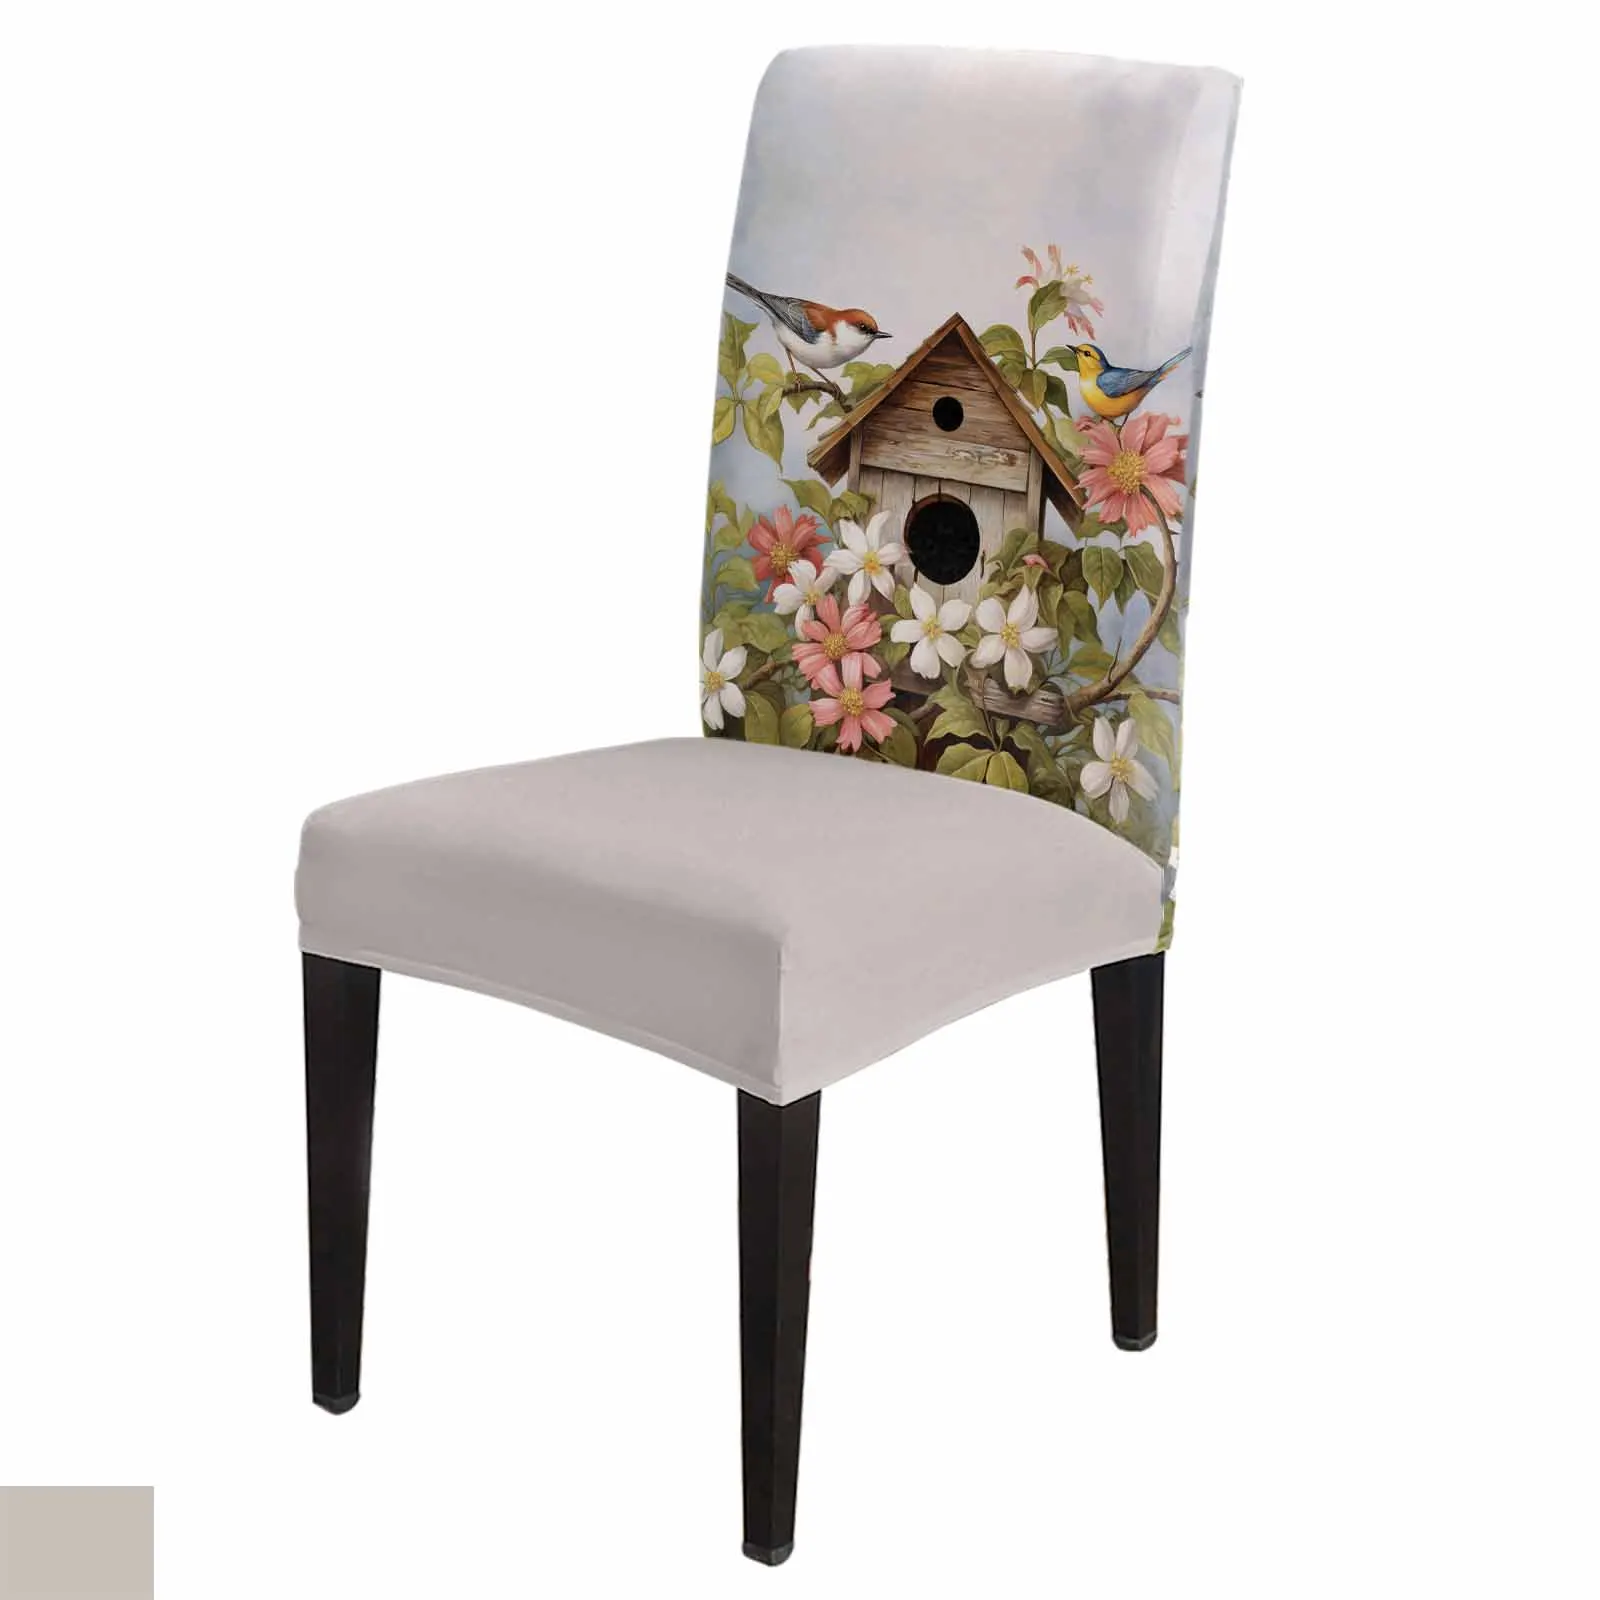 

Комплект чехлов на стулья для кухни, винтажный эластичный чехол из спандекса, с изображением птичьего домика, цветов, птиц, для дома, столовой